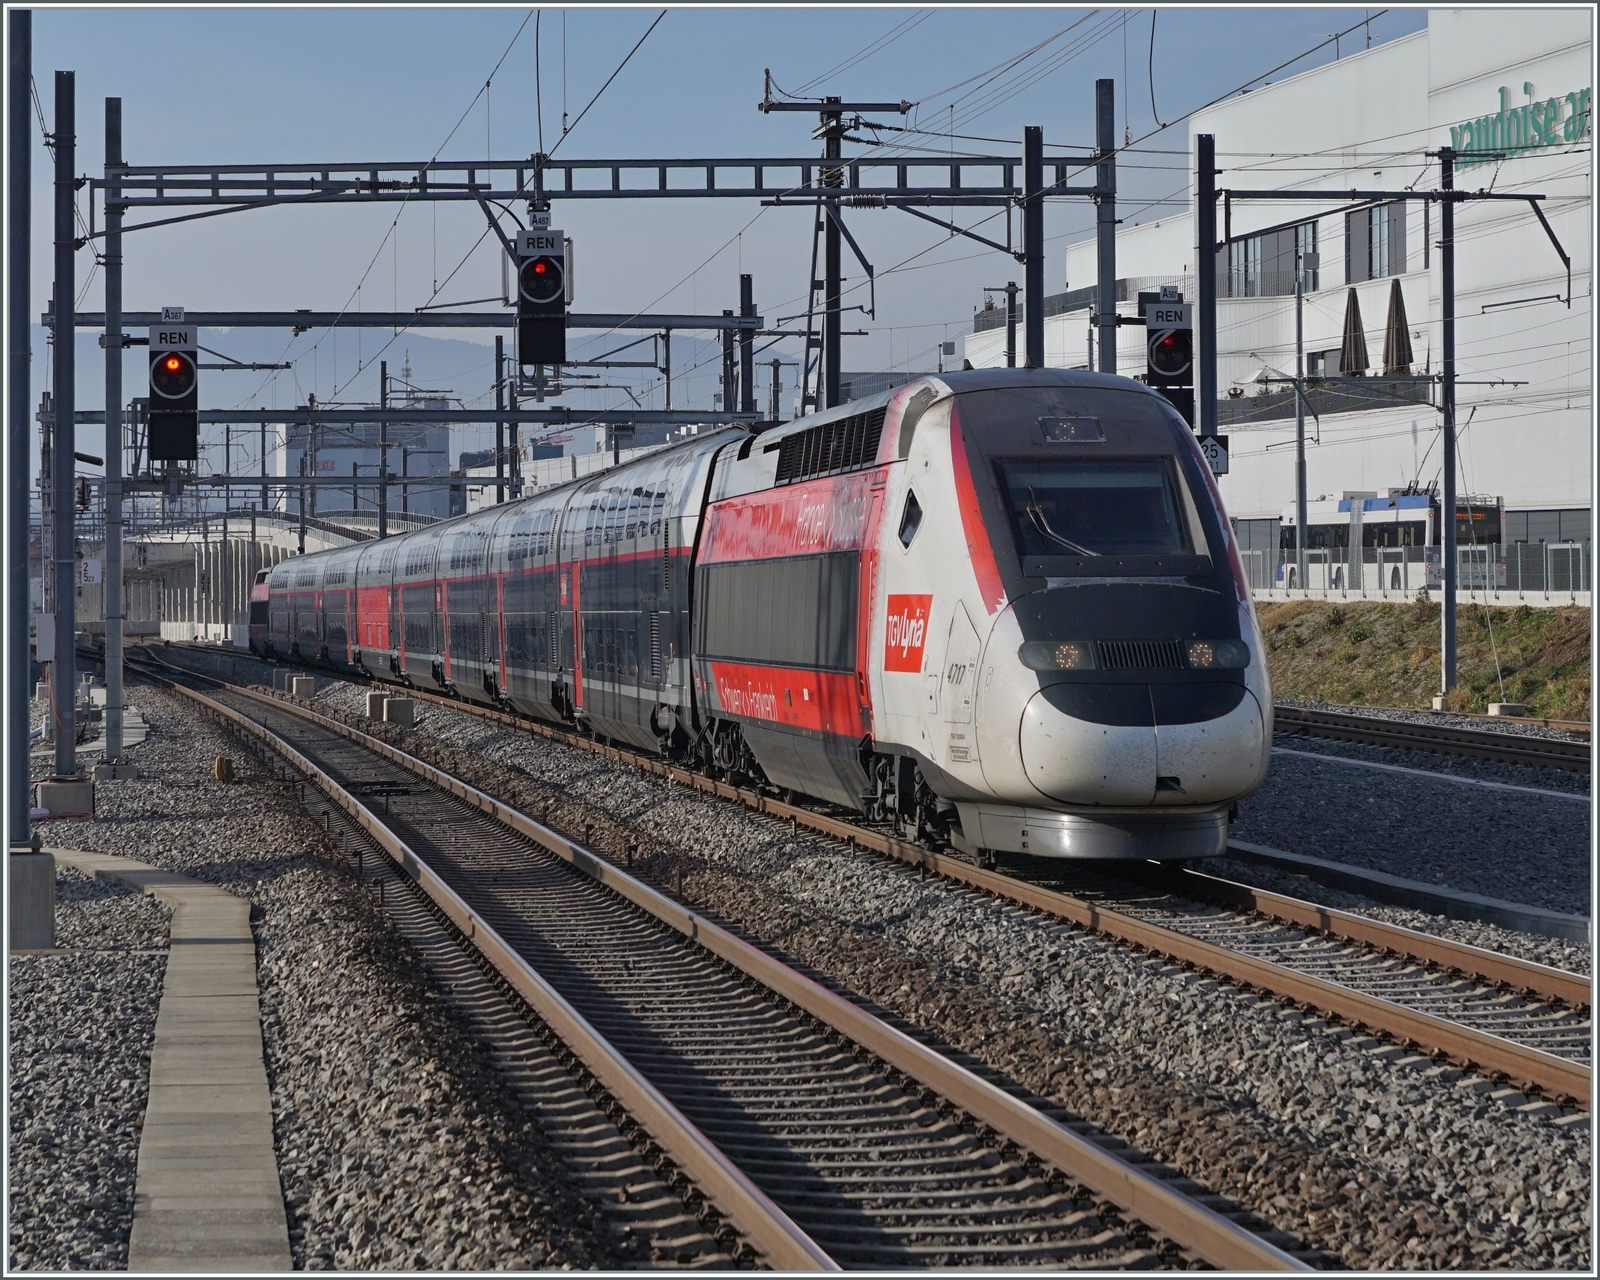 Ein TGV Lyria mit dem Triebkopf 4717 an der Spitze erreicht von Paris Gare de Lyon kommend Prilly Malley und ist somit schon fast an seinem Ziel in Lausanne.
Im Hintergrund ist die neue Überwerfung der Strecken nach Renens VD zu erkennen.
Standpunkt des Fotografen: am Ende des Bahnsteiges.

21. Februar 2023